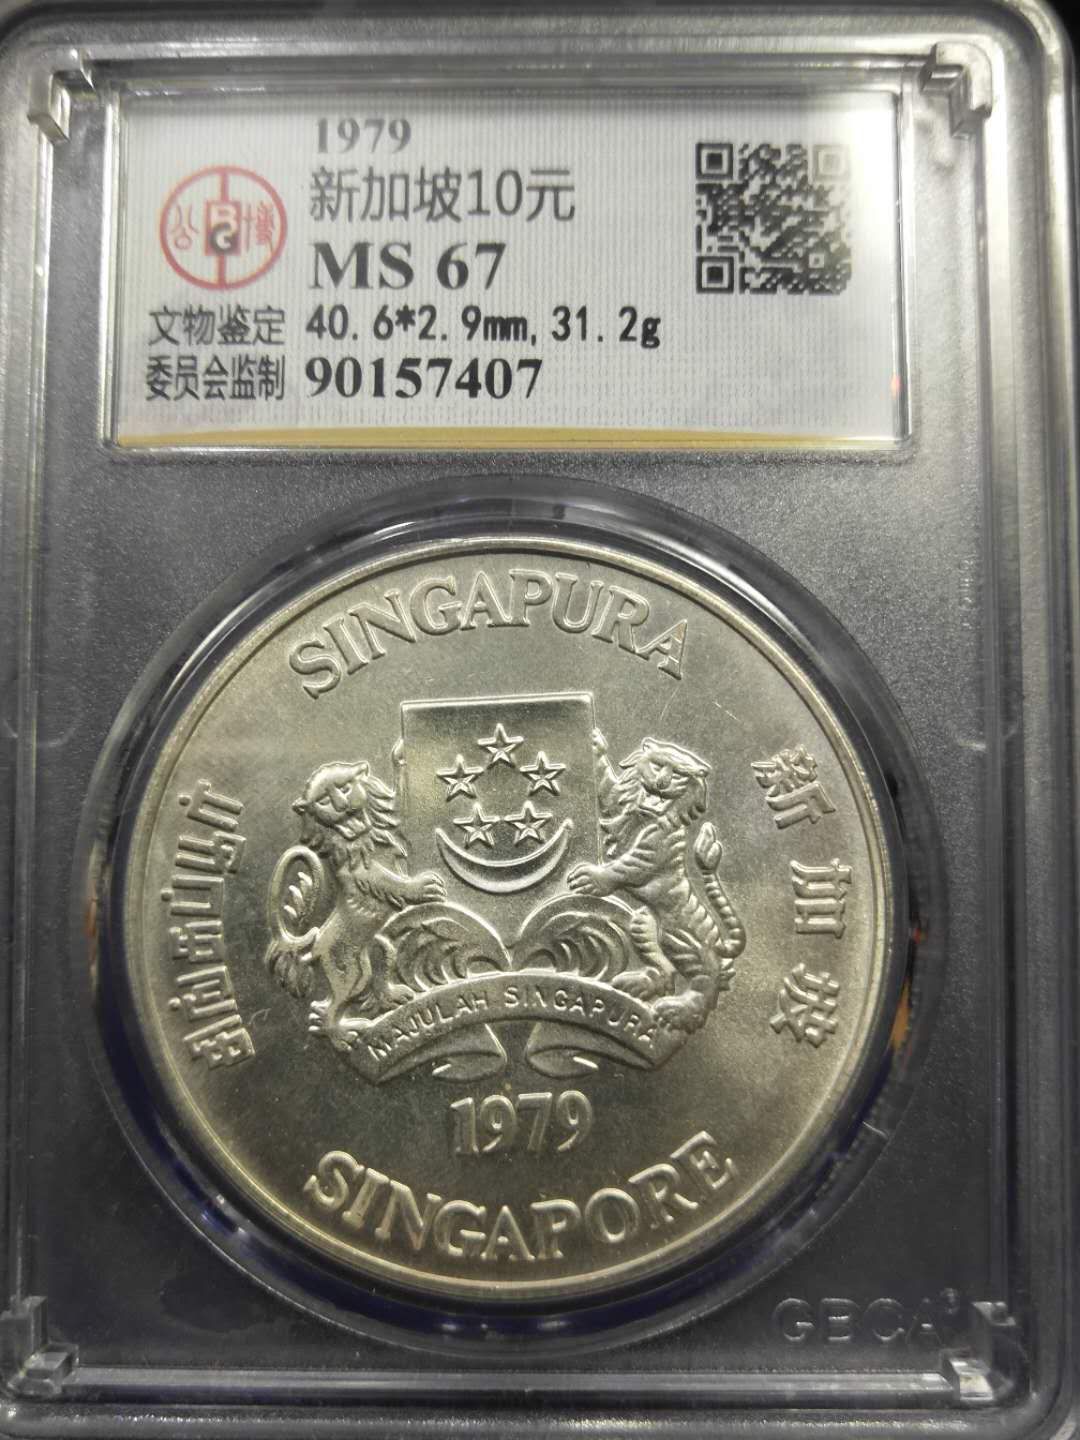 新加坡10元纪念钞图片